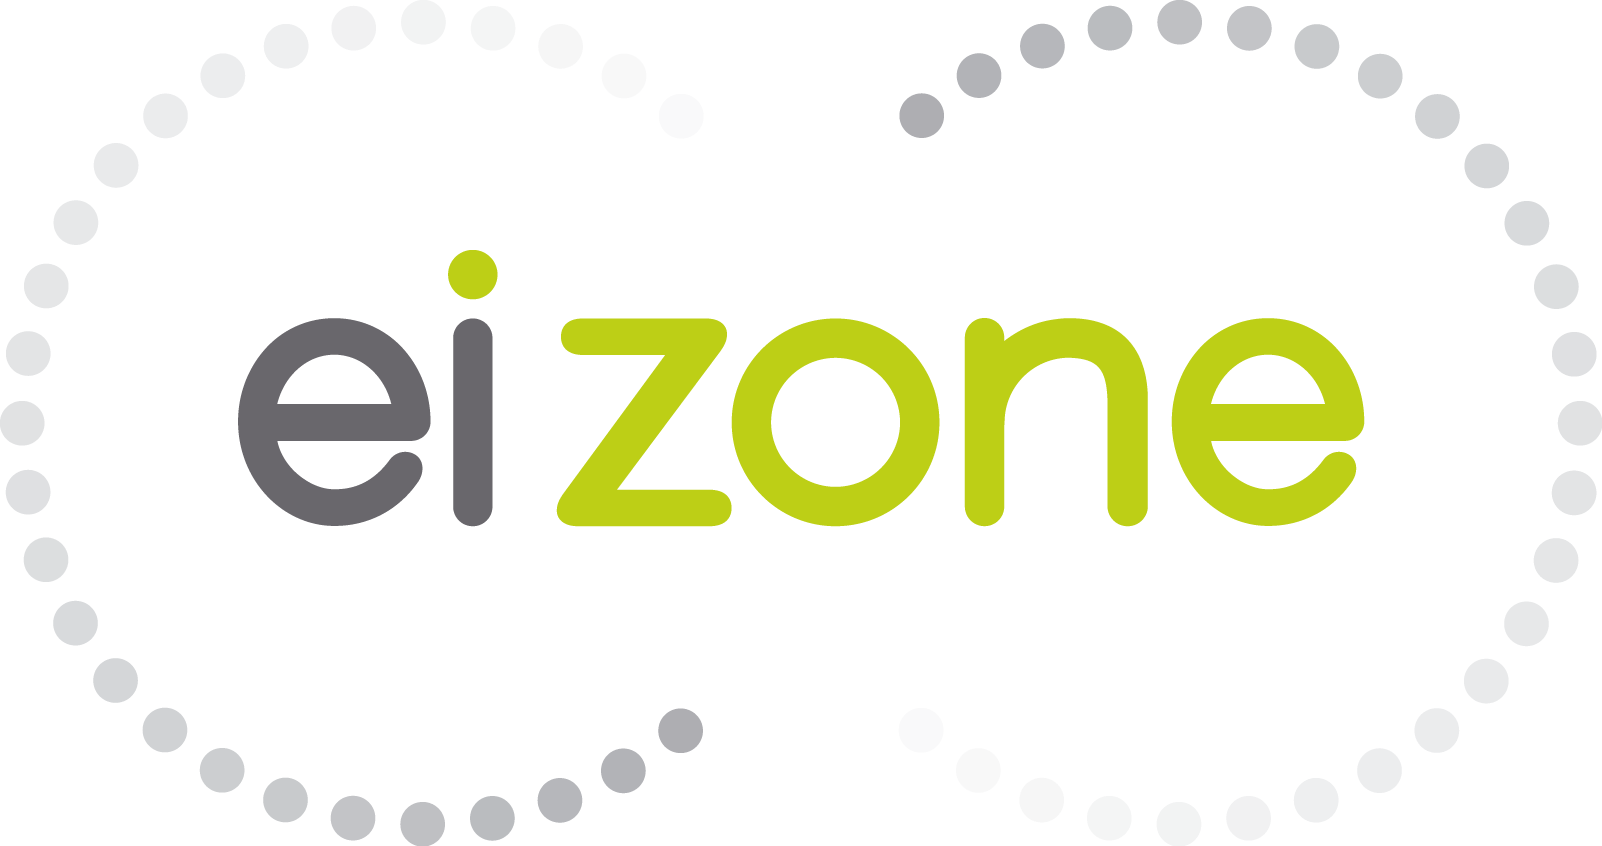 EI Zone logo